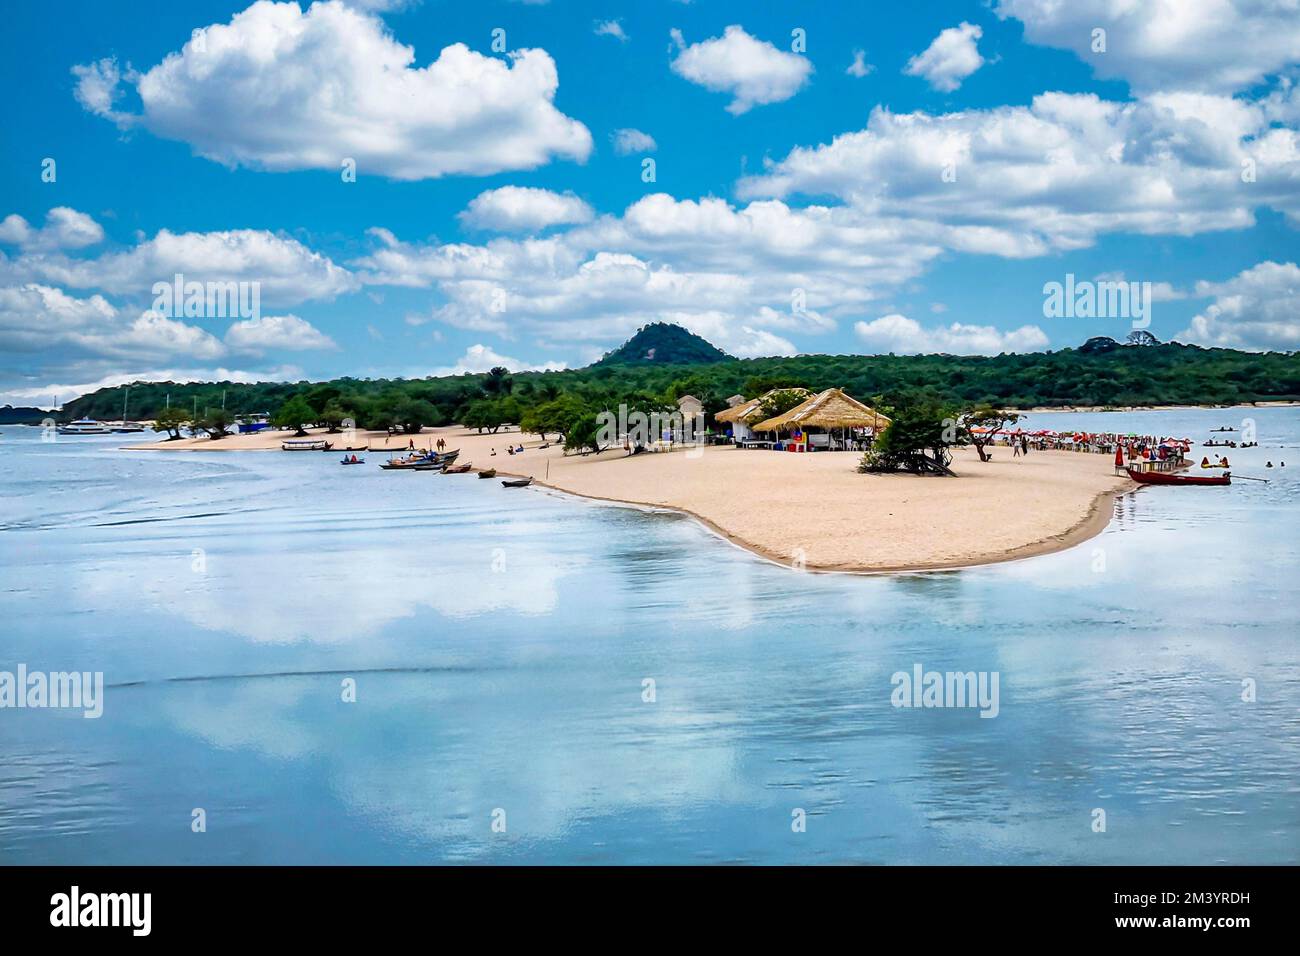 Long sandy beach in Alter do Chao along the amazon river, Para, Brazil Stock Photo